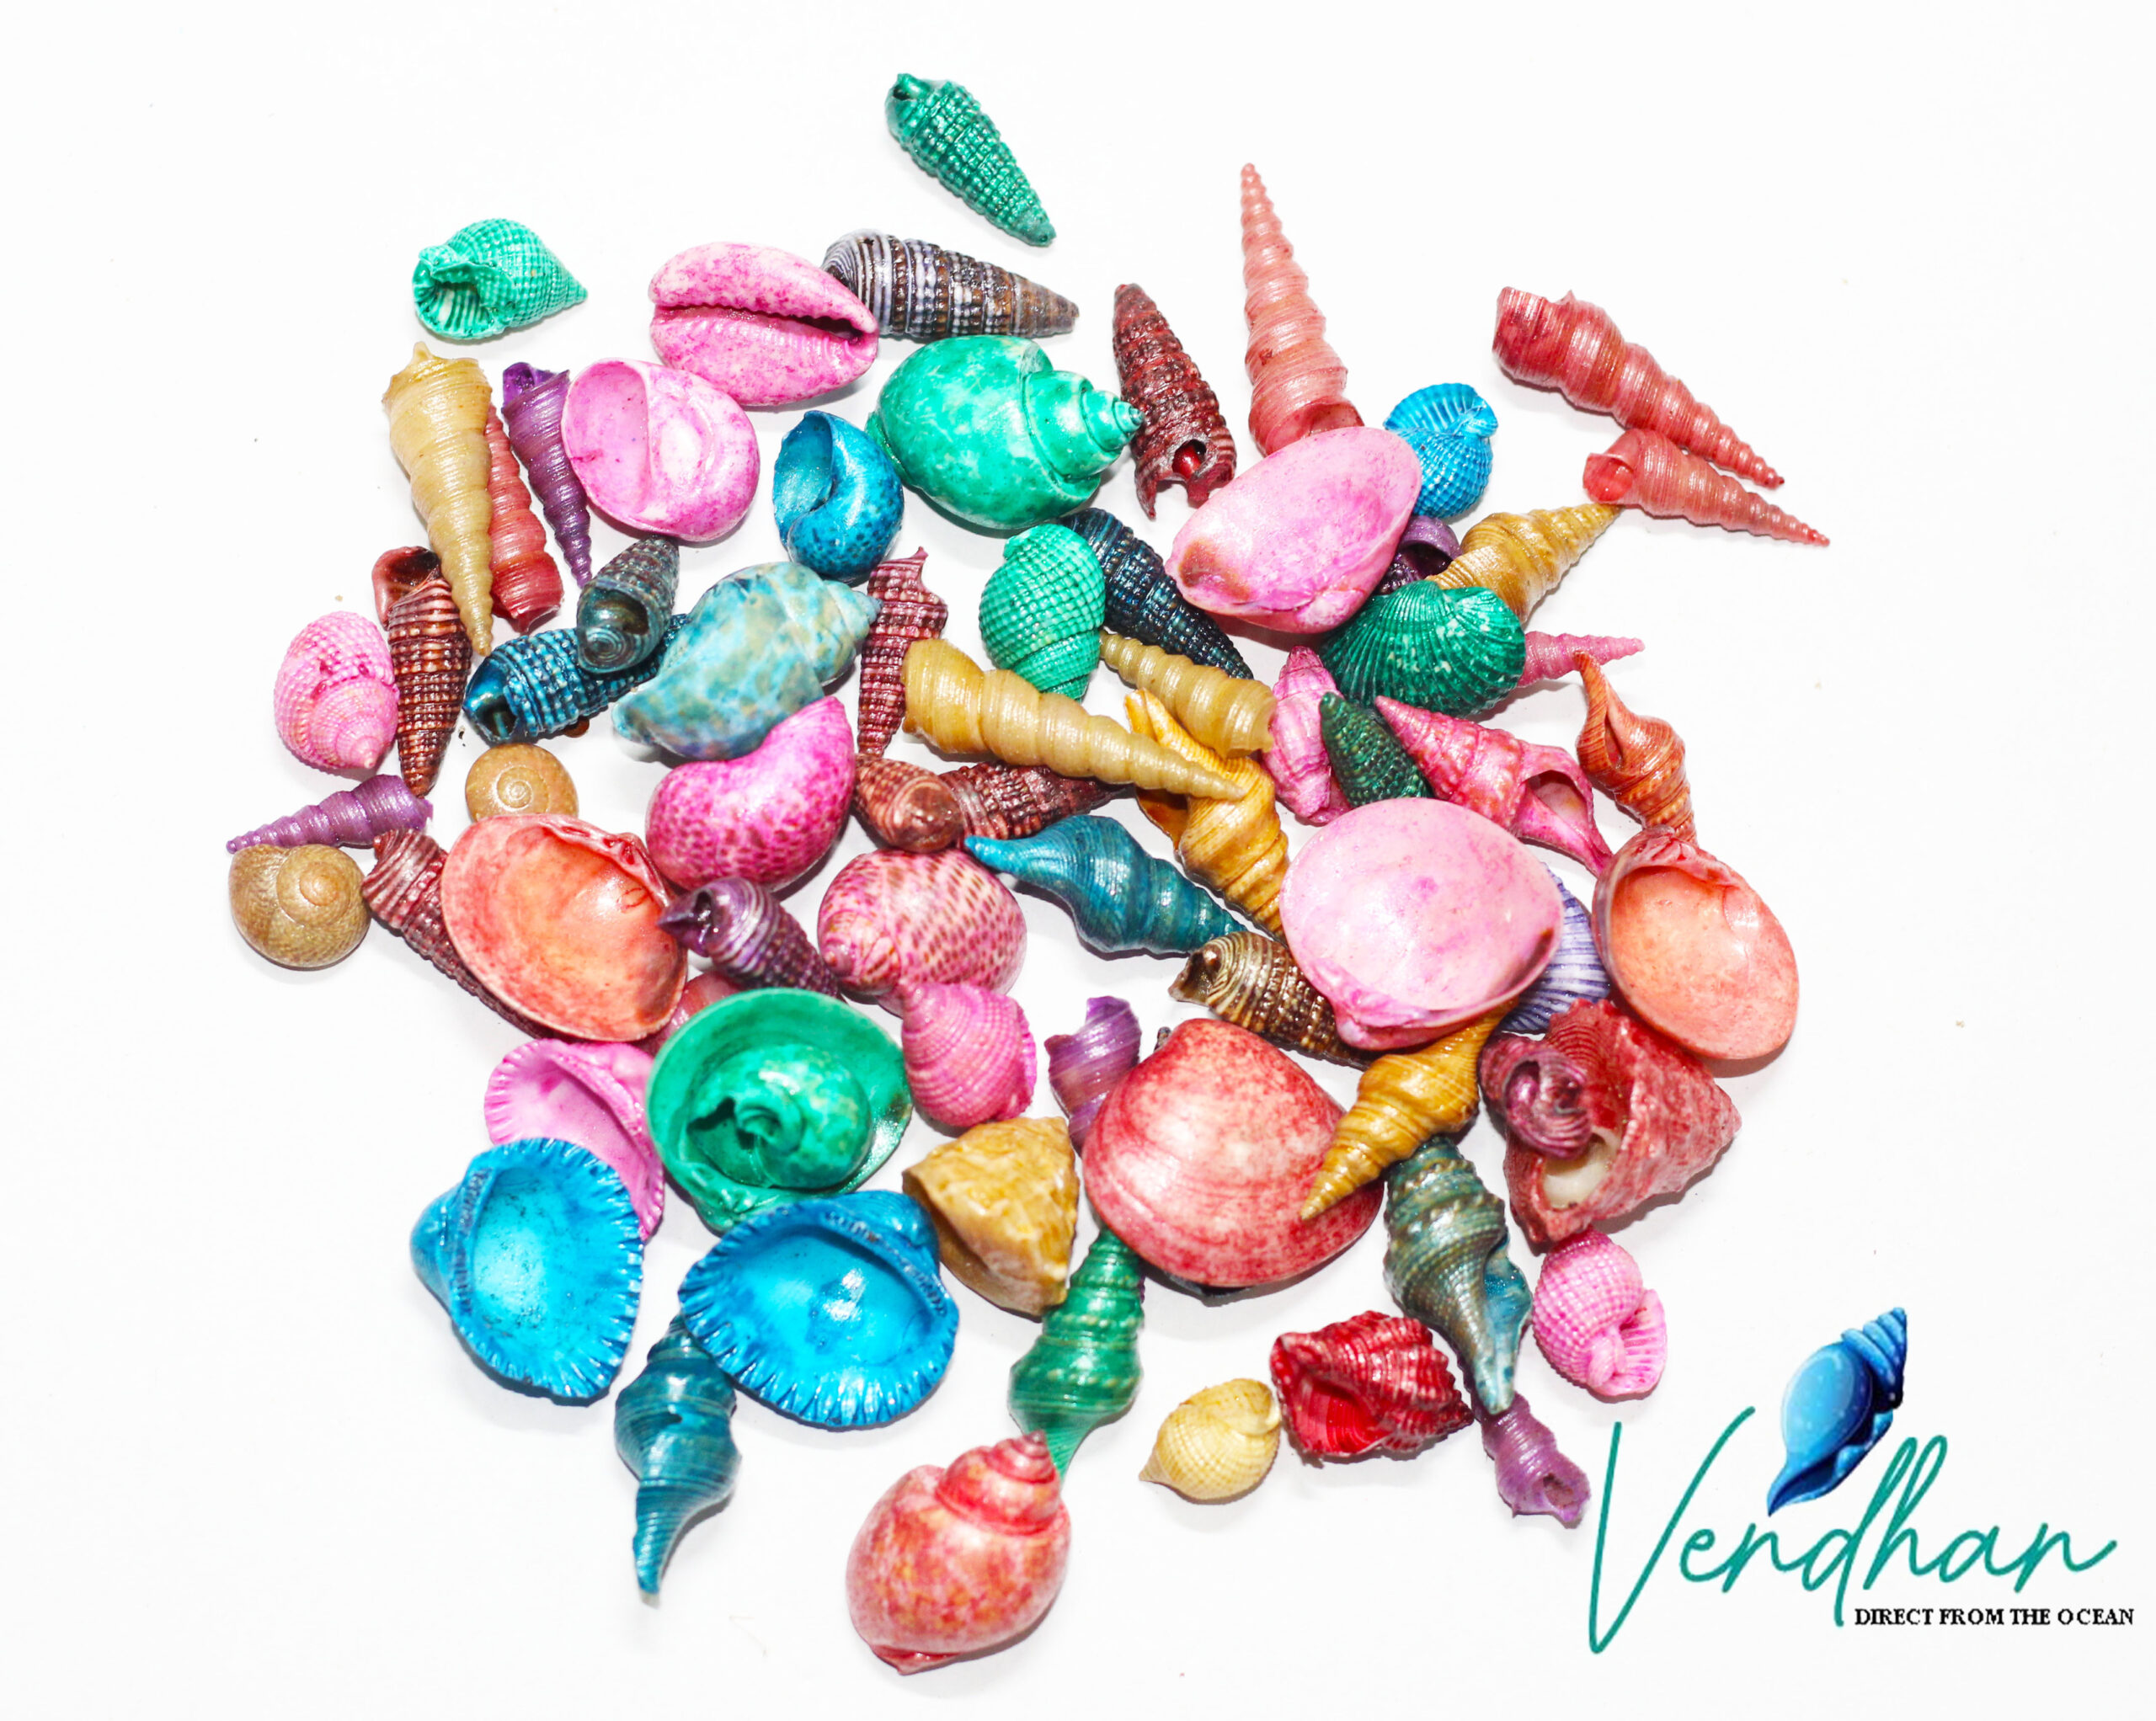 Vendhan Natural Color Seashell Mixed (Small Size - 1KG)